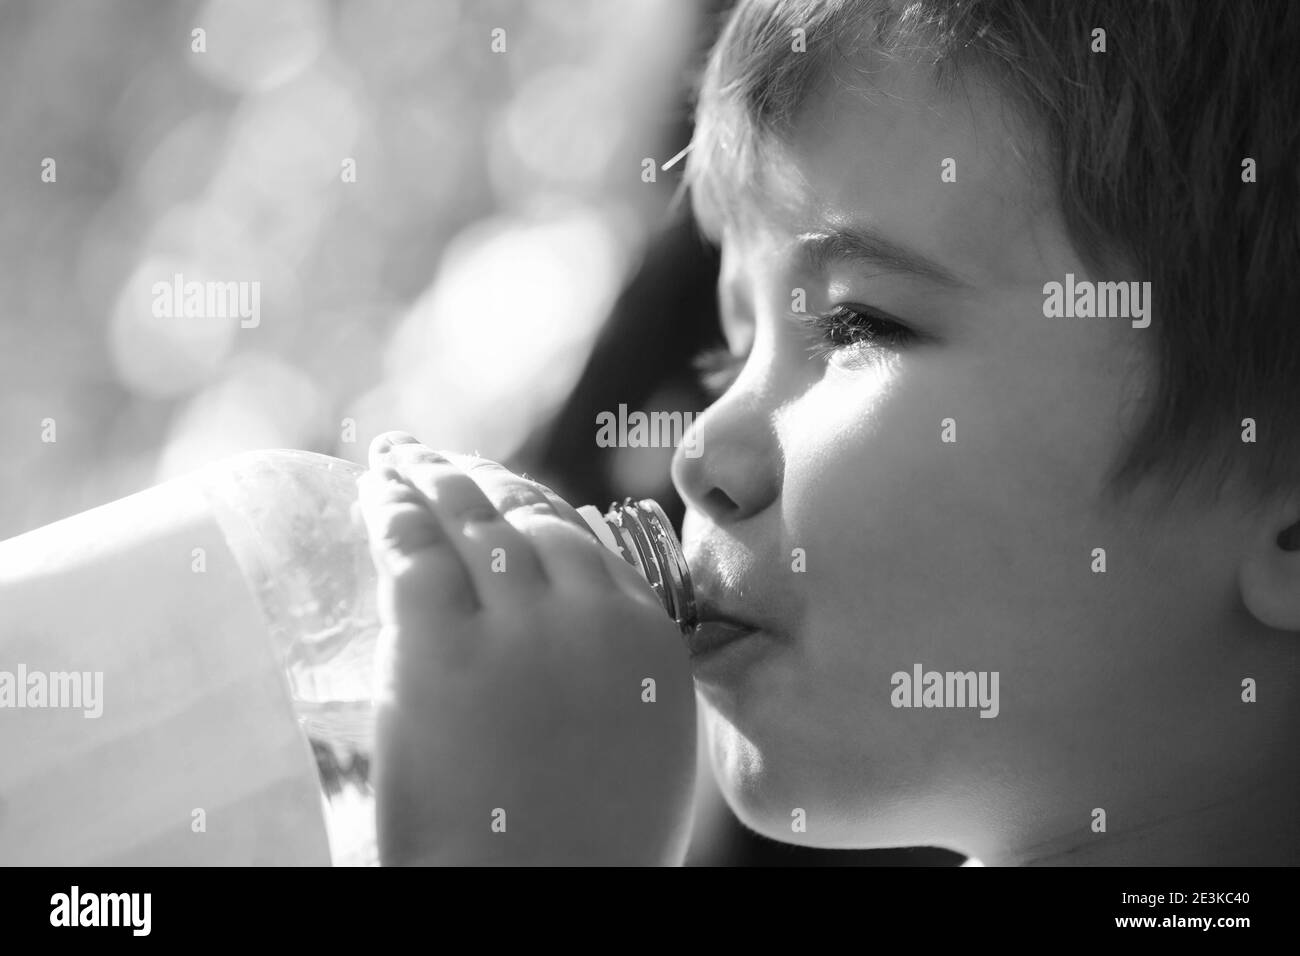 L'enfant boit de l'eau dans une bouteille tout en marchant, santé de bébé. Bouteille d'eau pour garçon. Jeune garçon tenant boire bouteille d'eau douce. Noir et blanc Banque D'Images